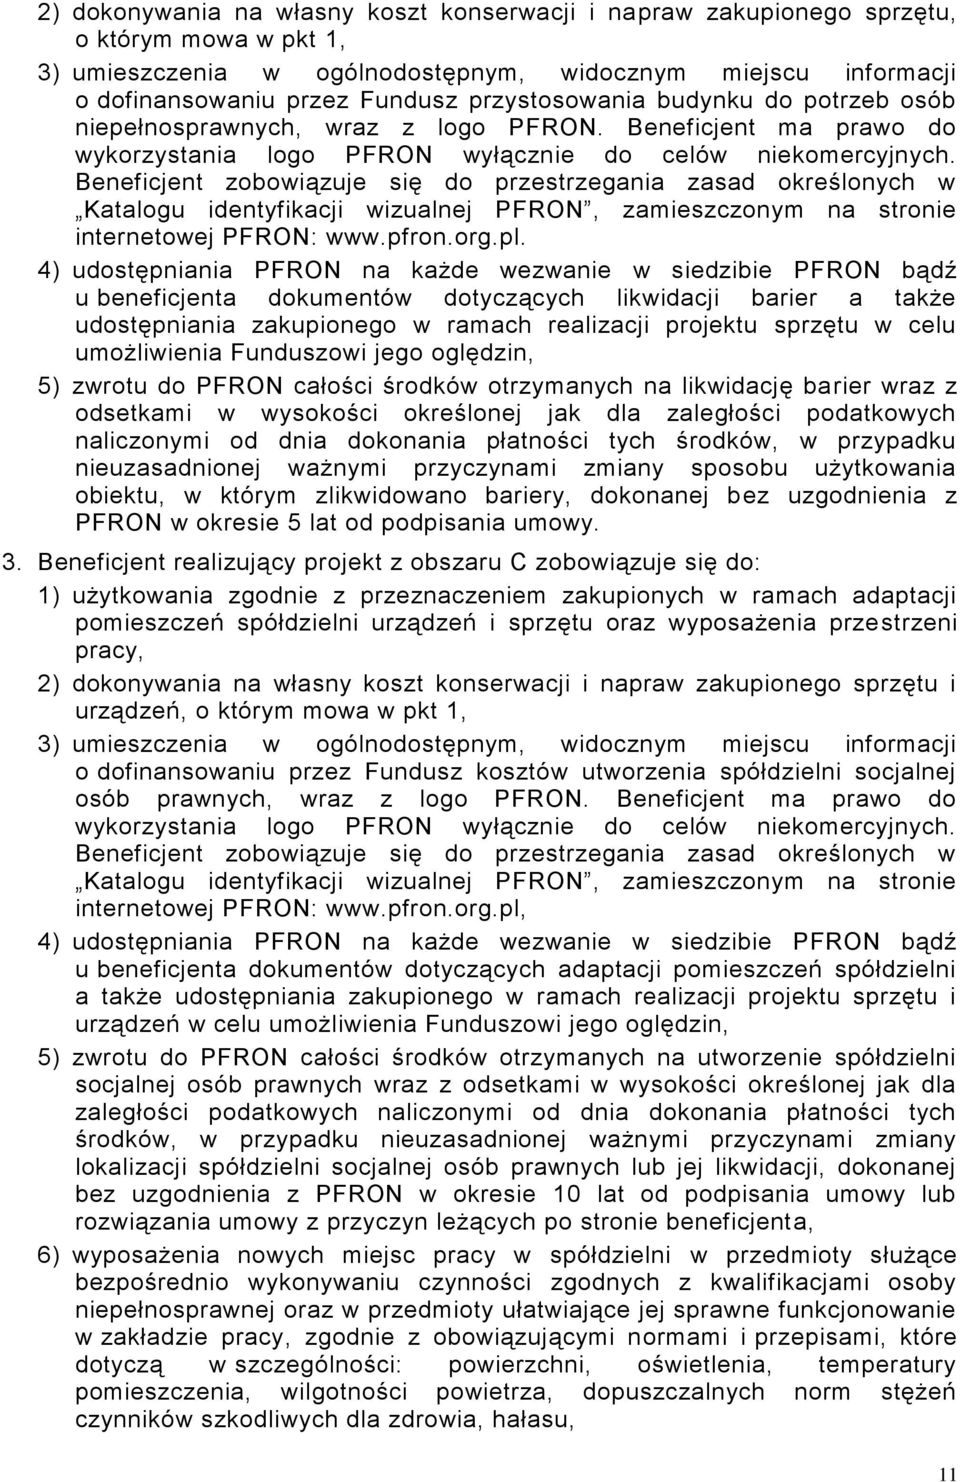 Beneficjent zobowiązuje się do przestrzegania zasad określonych w Katalogu identyfikacji wizualnej PFRON, zamieszczonym na stronie internetowej PFRON: www.pfron.org.pl.